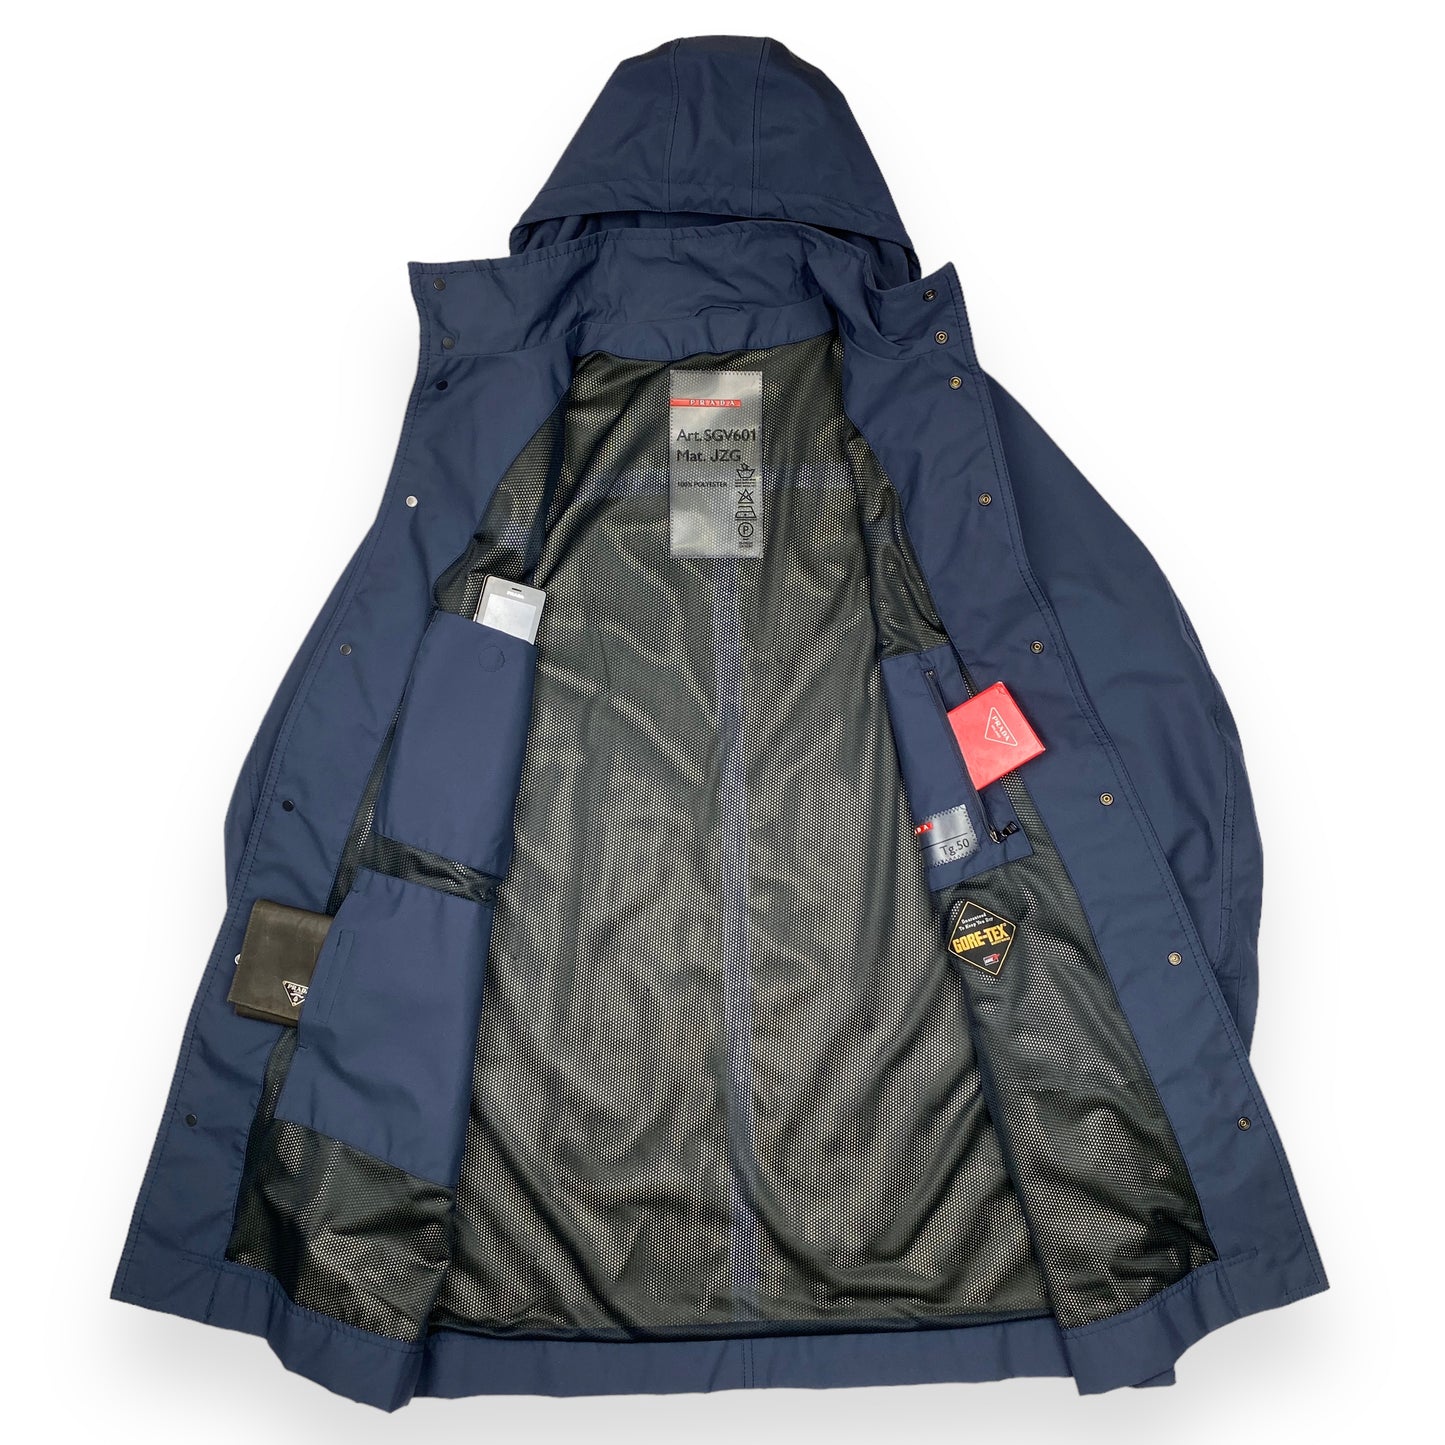 Prada Sport Gore-Tex Overcoat - Brand New